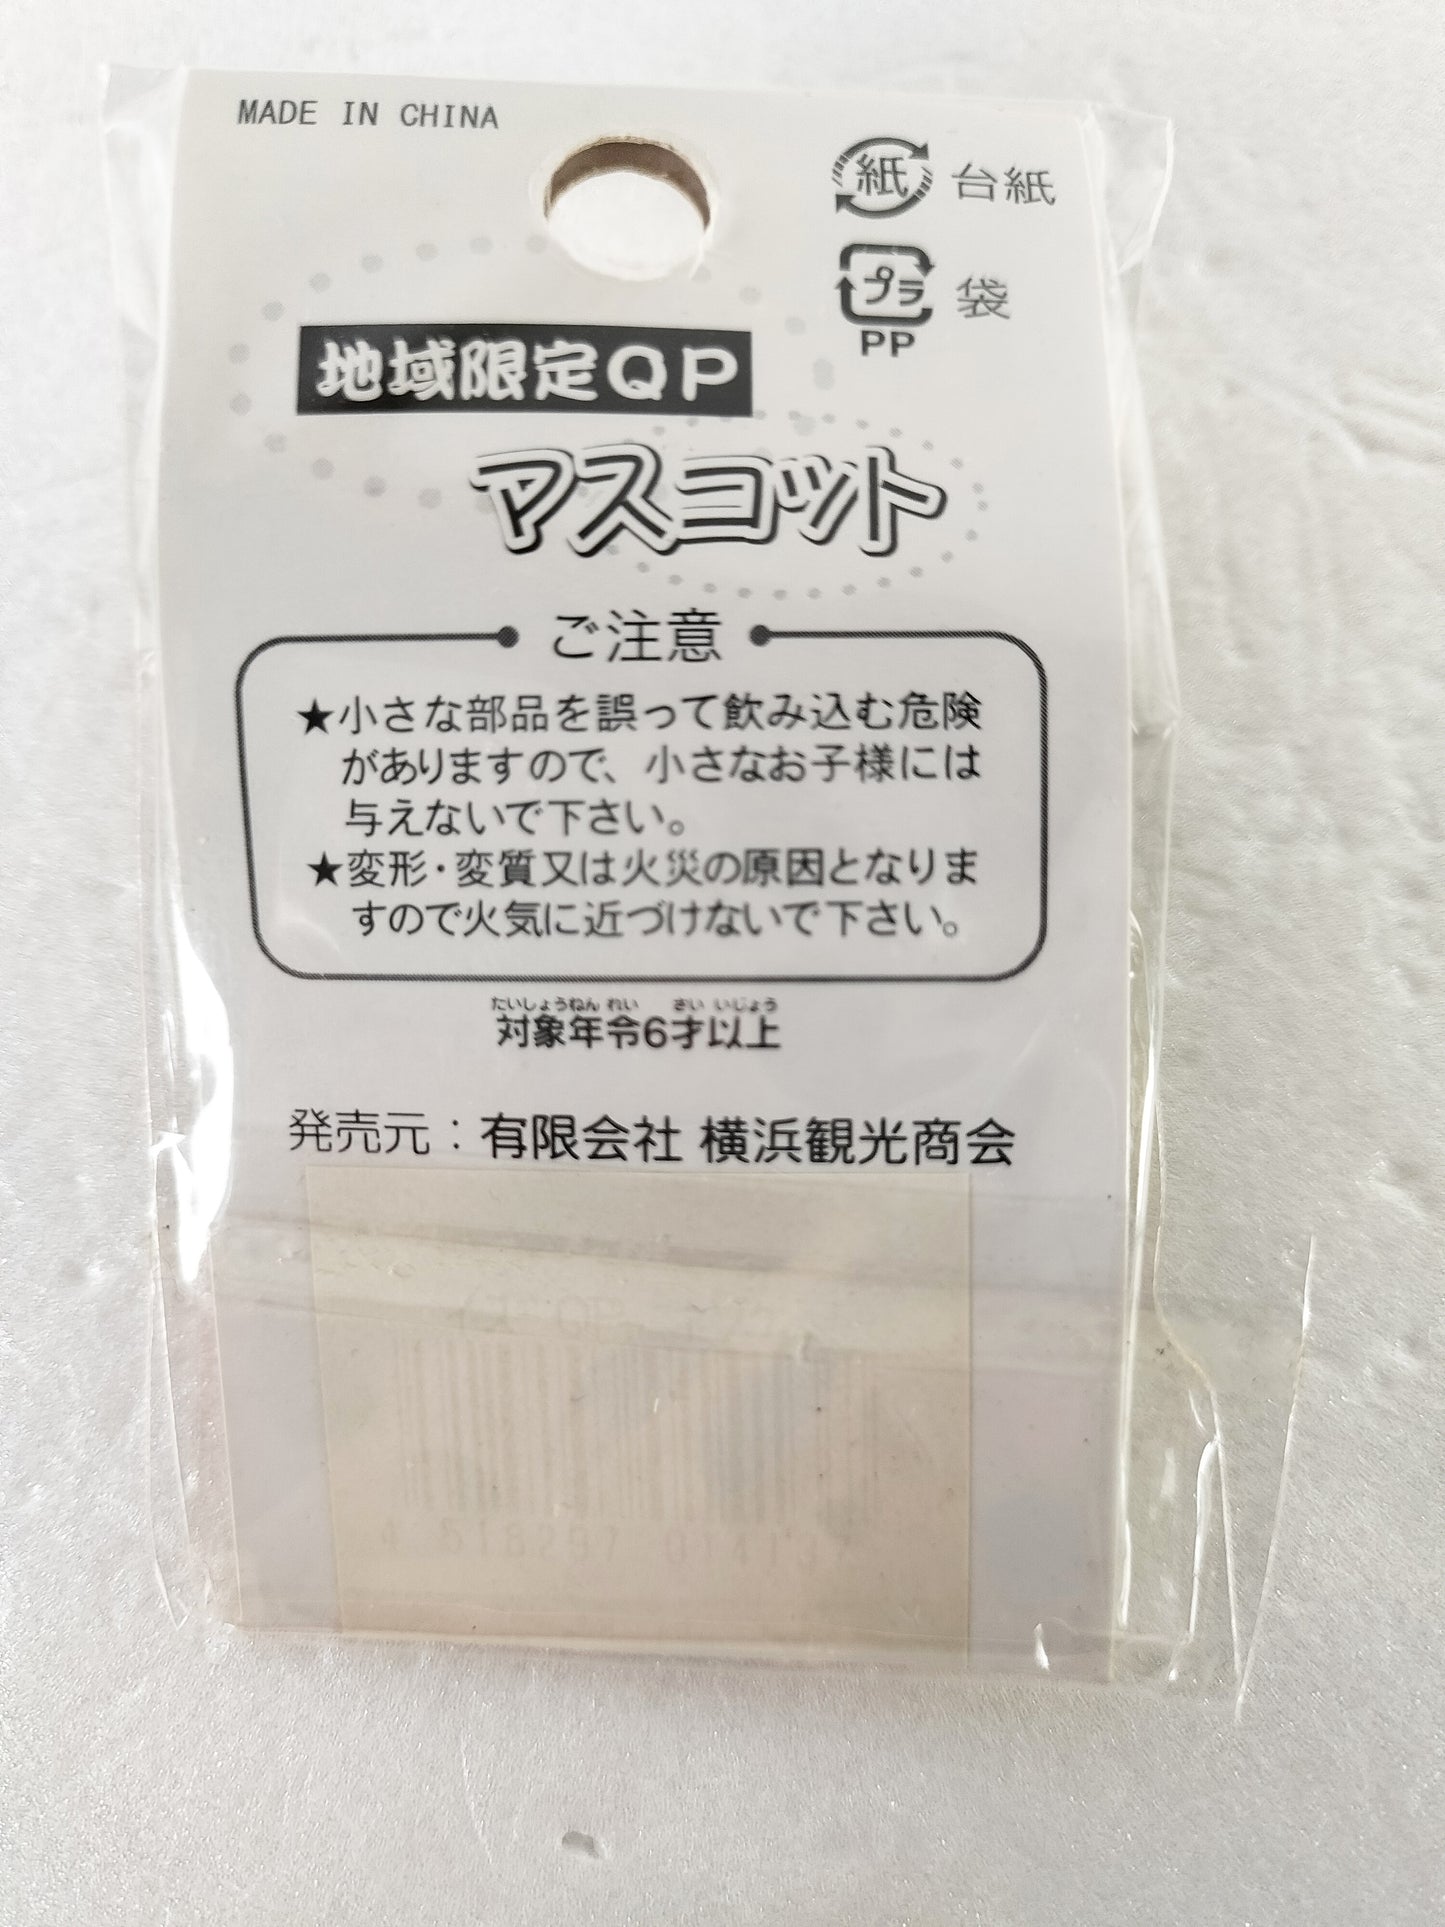 Kewpie Strap QP limited version "Izu Kewpie" vintage